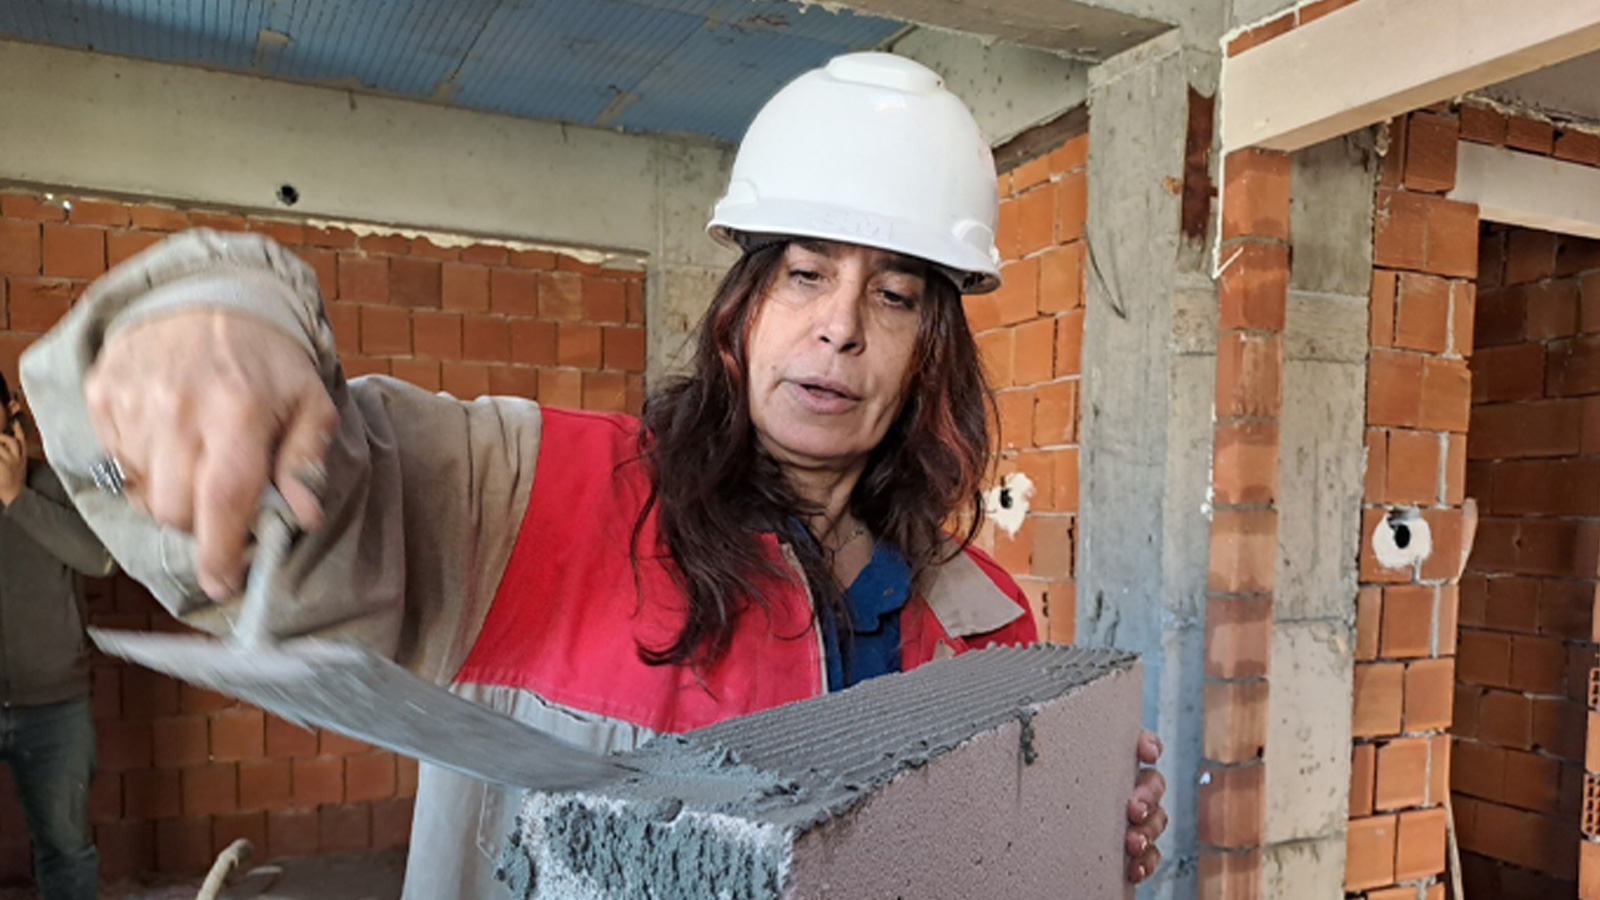 Baretini ve çizmelerini giyip inşaata gidiyor! 60 bin TL&#039;ye işçi bulamayan kadın kendi çalışıyor